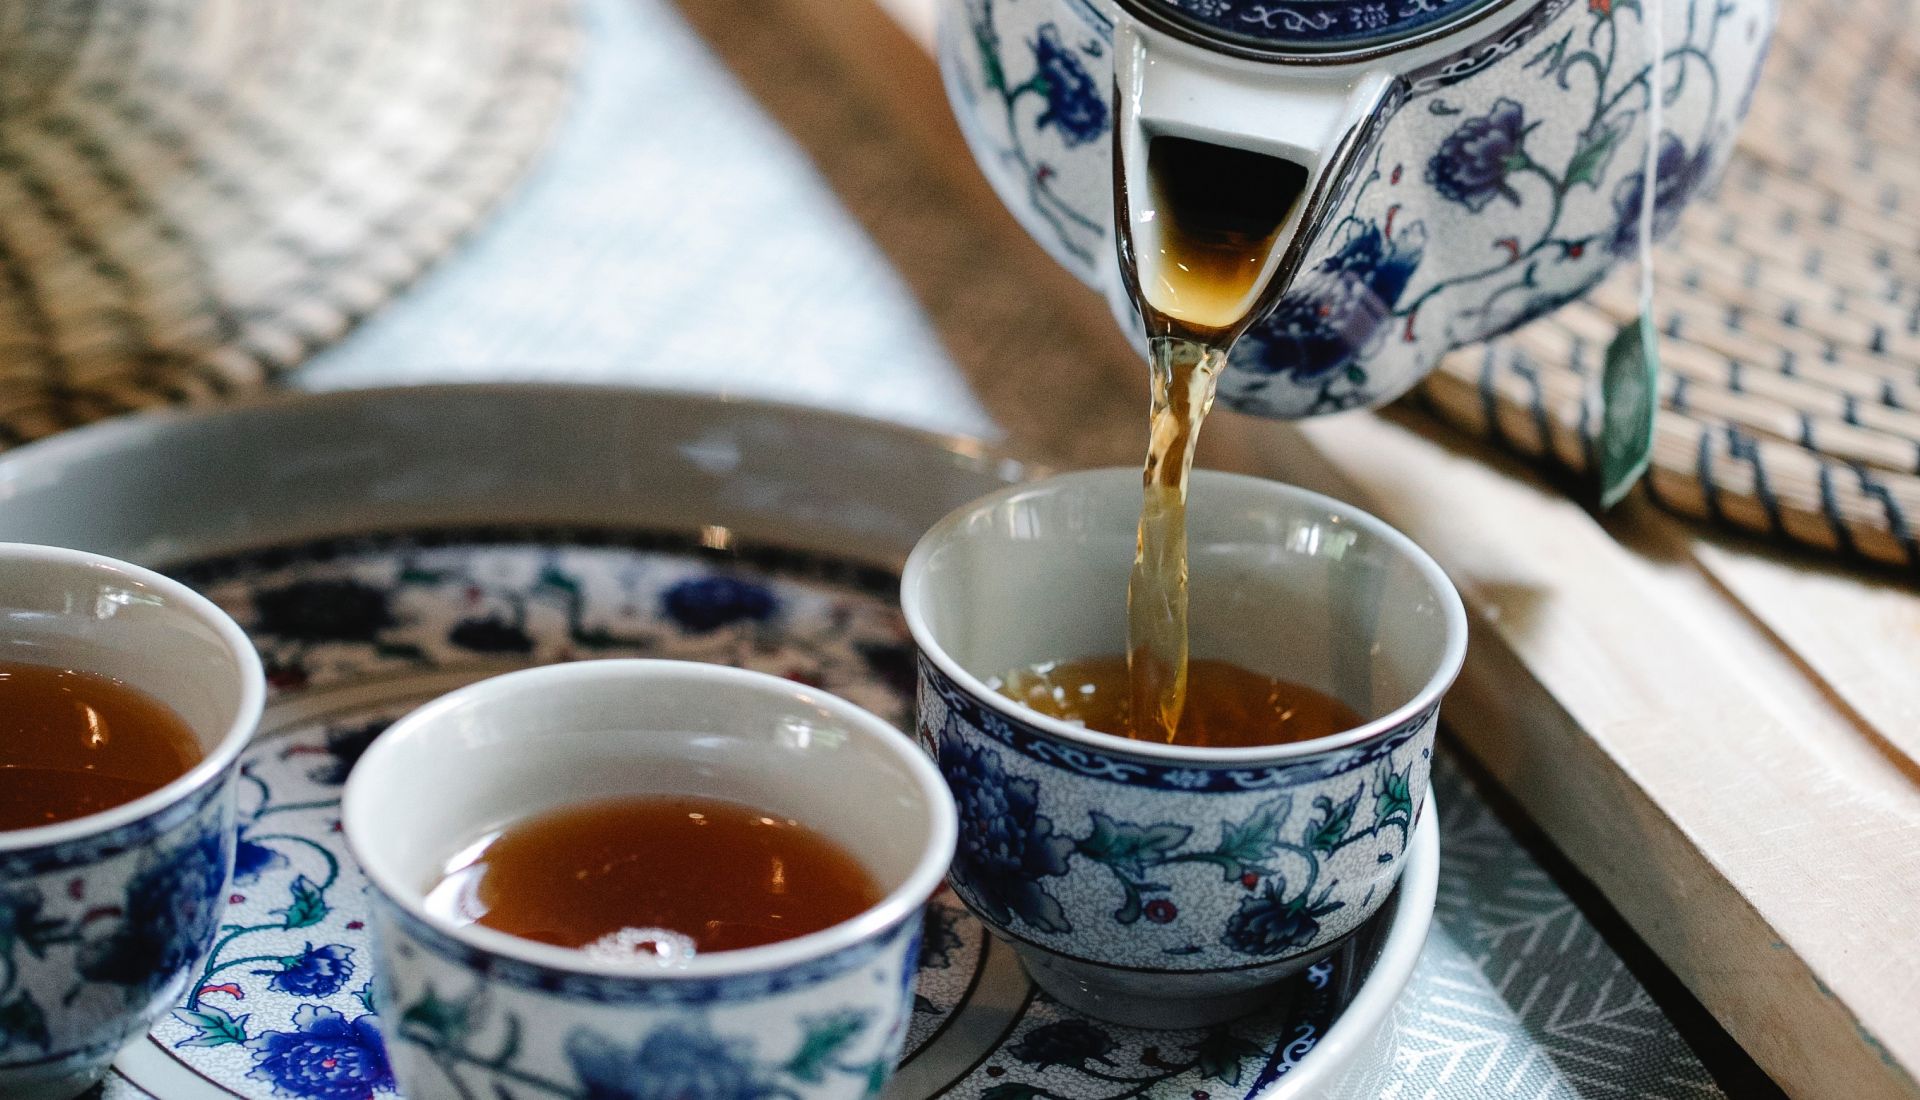 Cérémonie du thé : un moment de convivialité gourmand et sensoriel